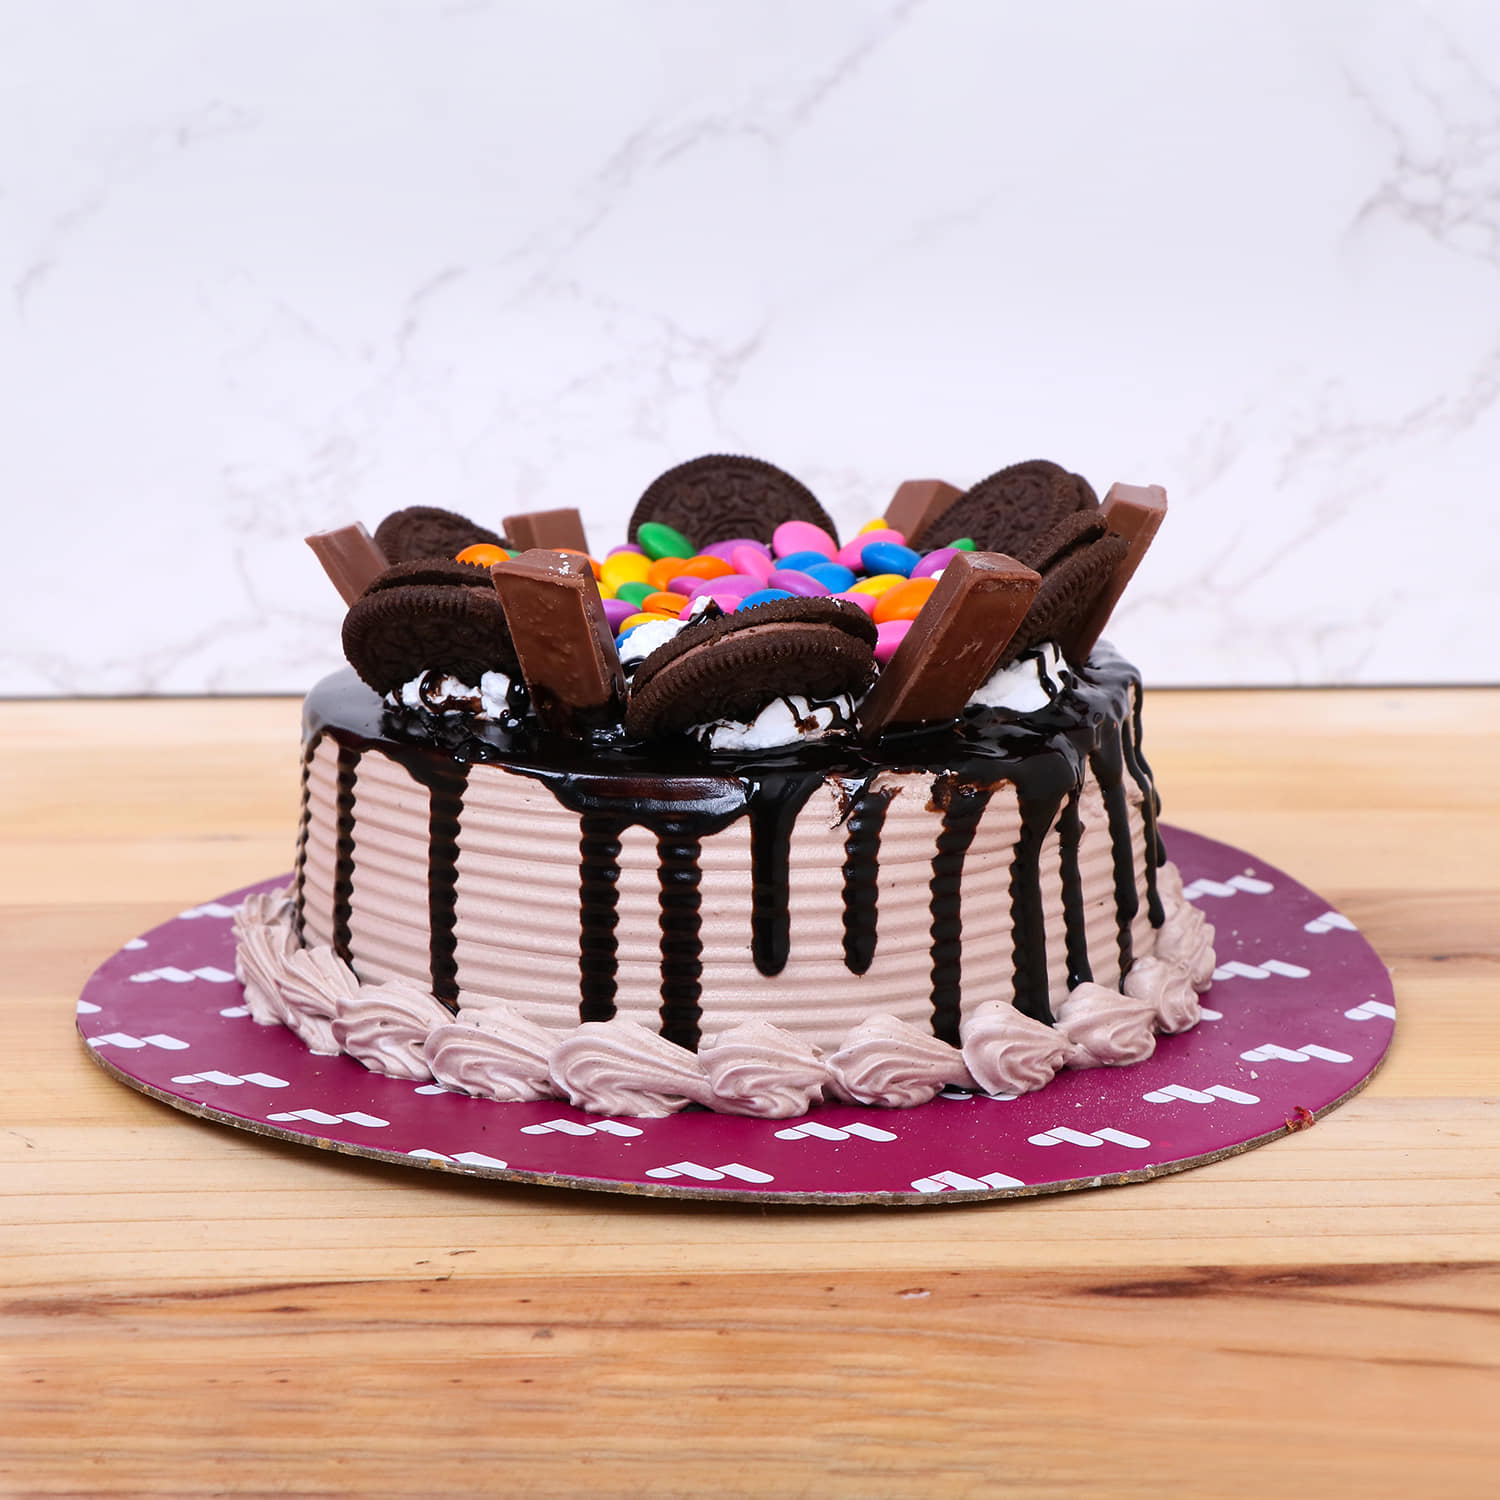 KitKat Cake - Decorated Cake by Peggy Does Cake - CakesDecor